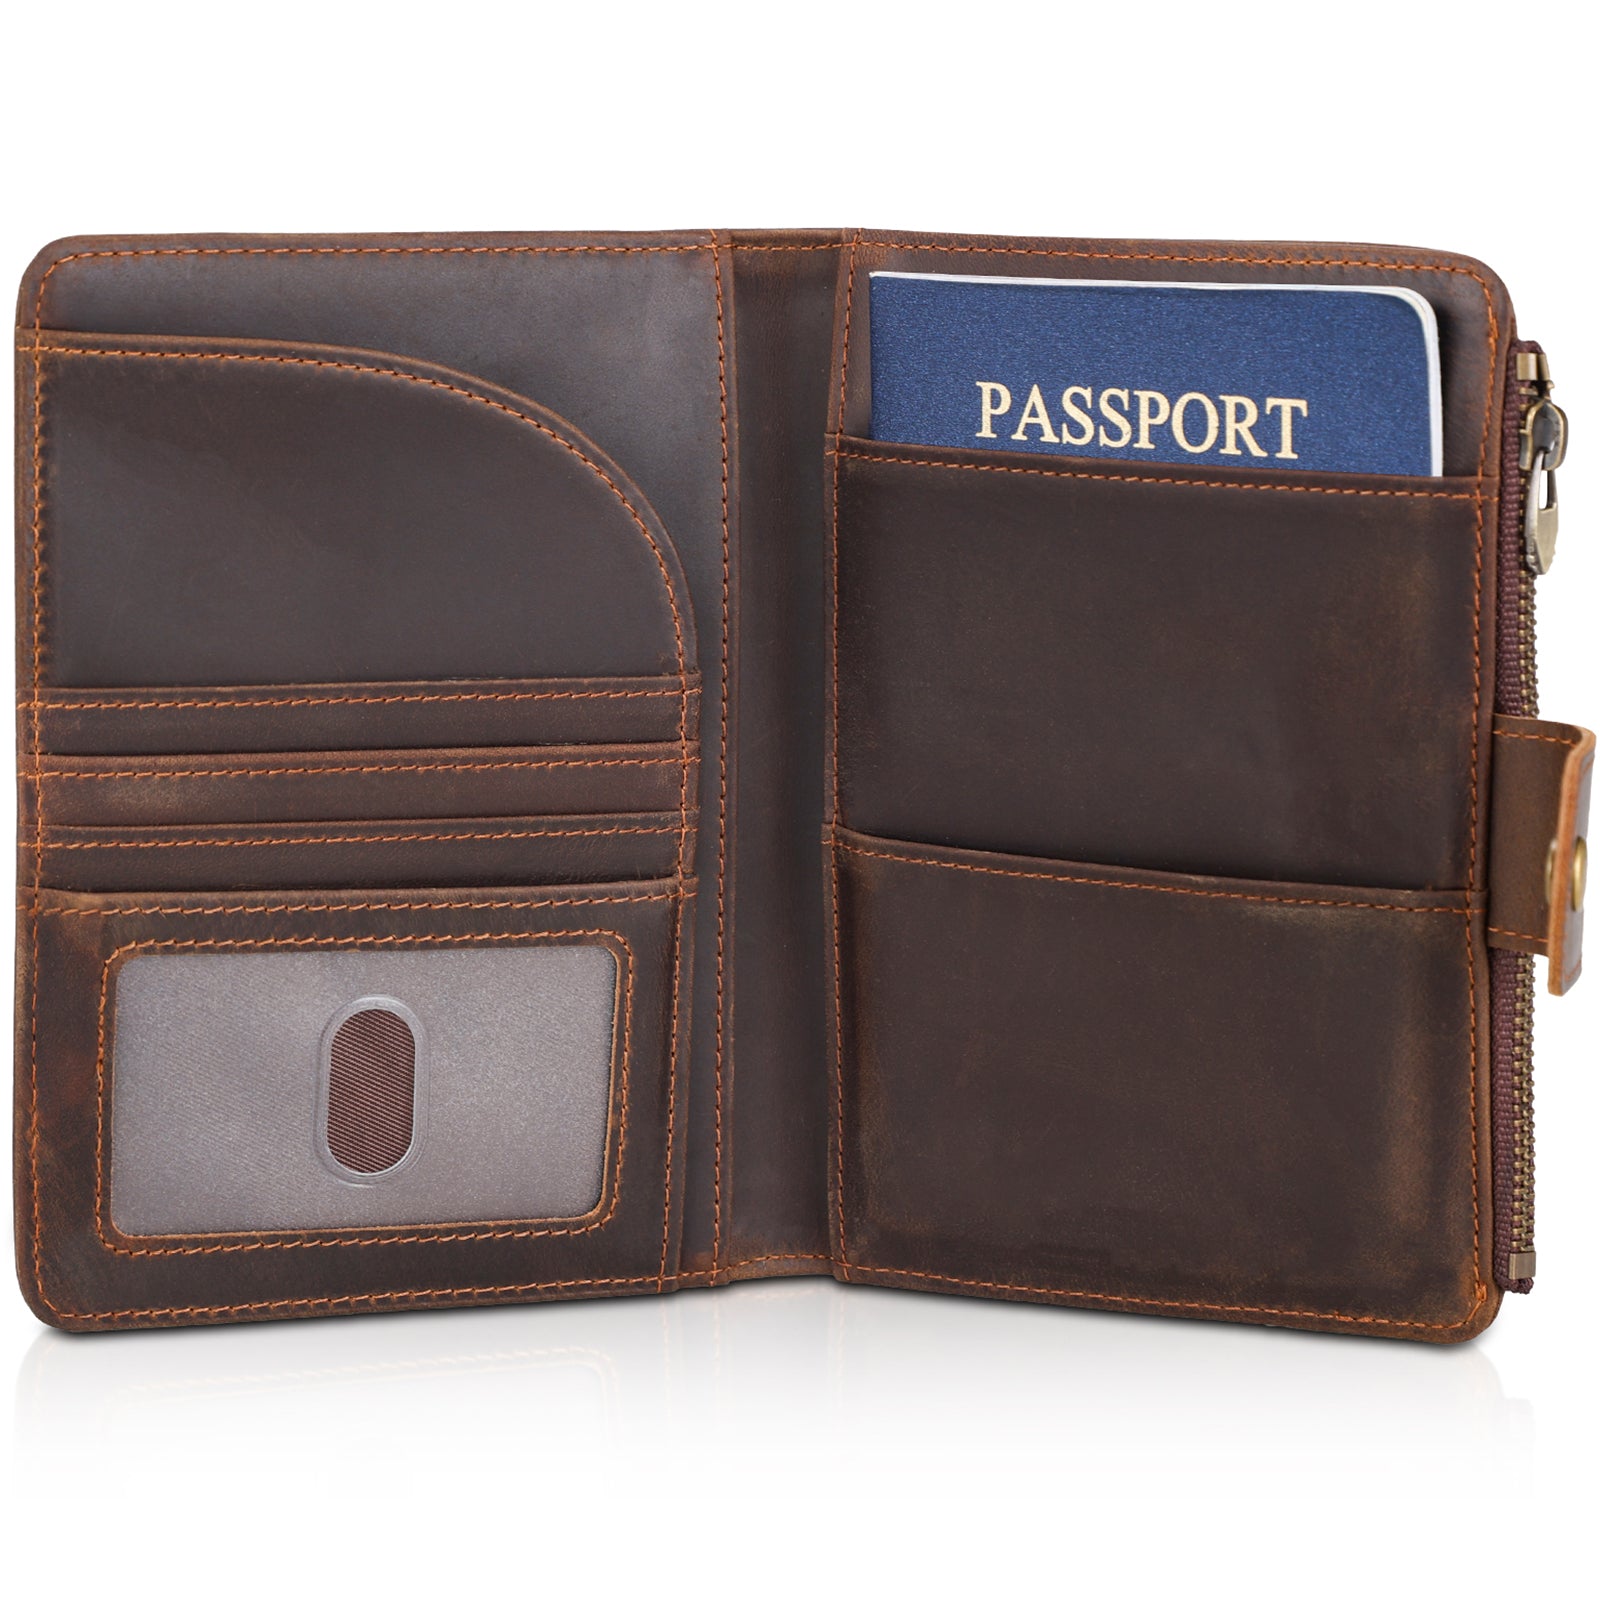 Full Grain Leather 2 Passports Travel Wallet Holder RFID Blocking (Dark Brown)